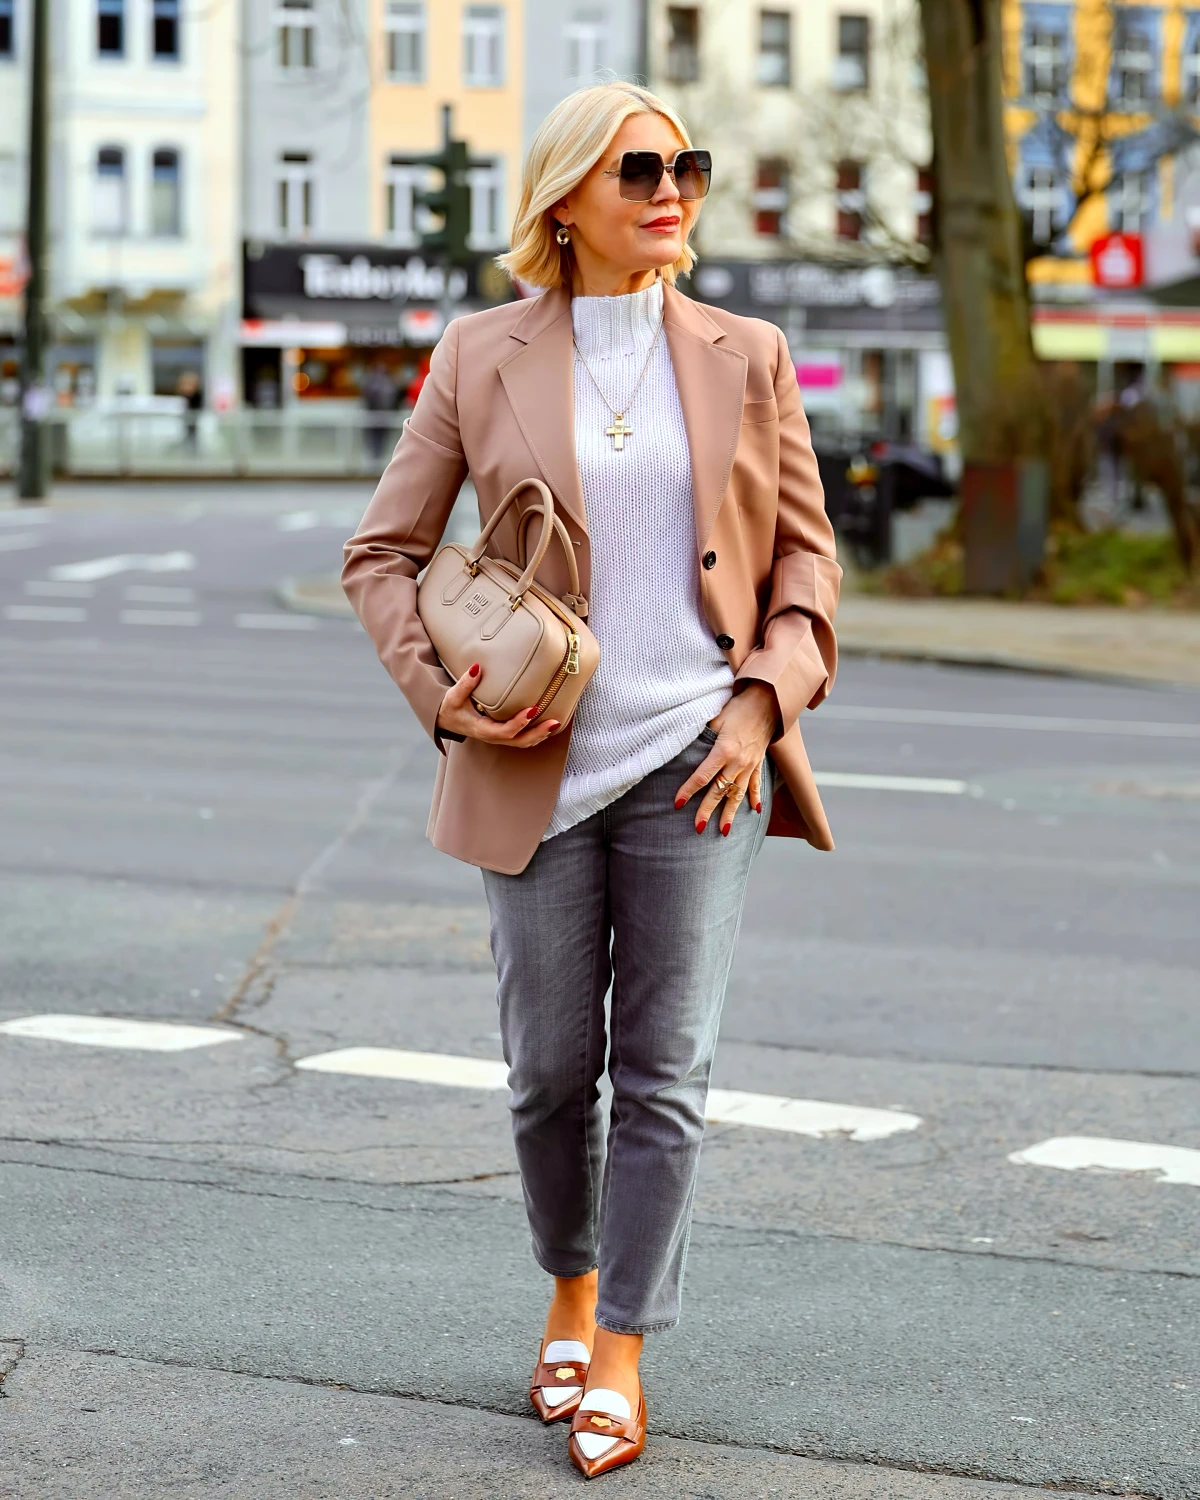 le parfait style casual chic femme 50 ans veste rose jean rue